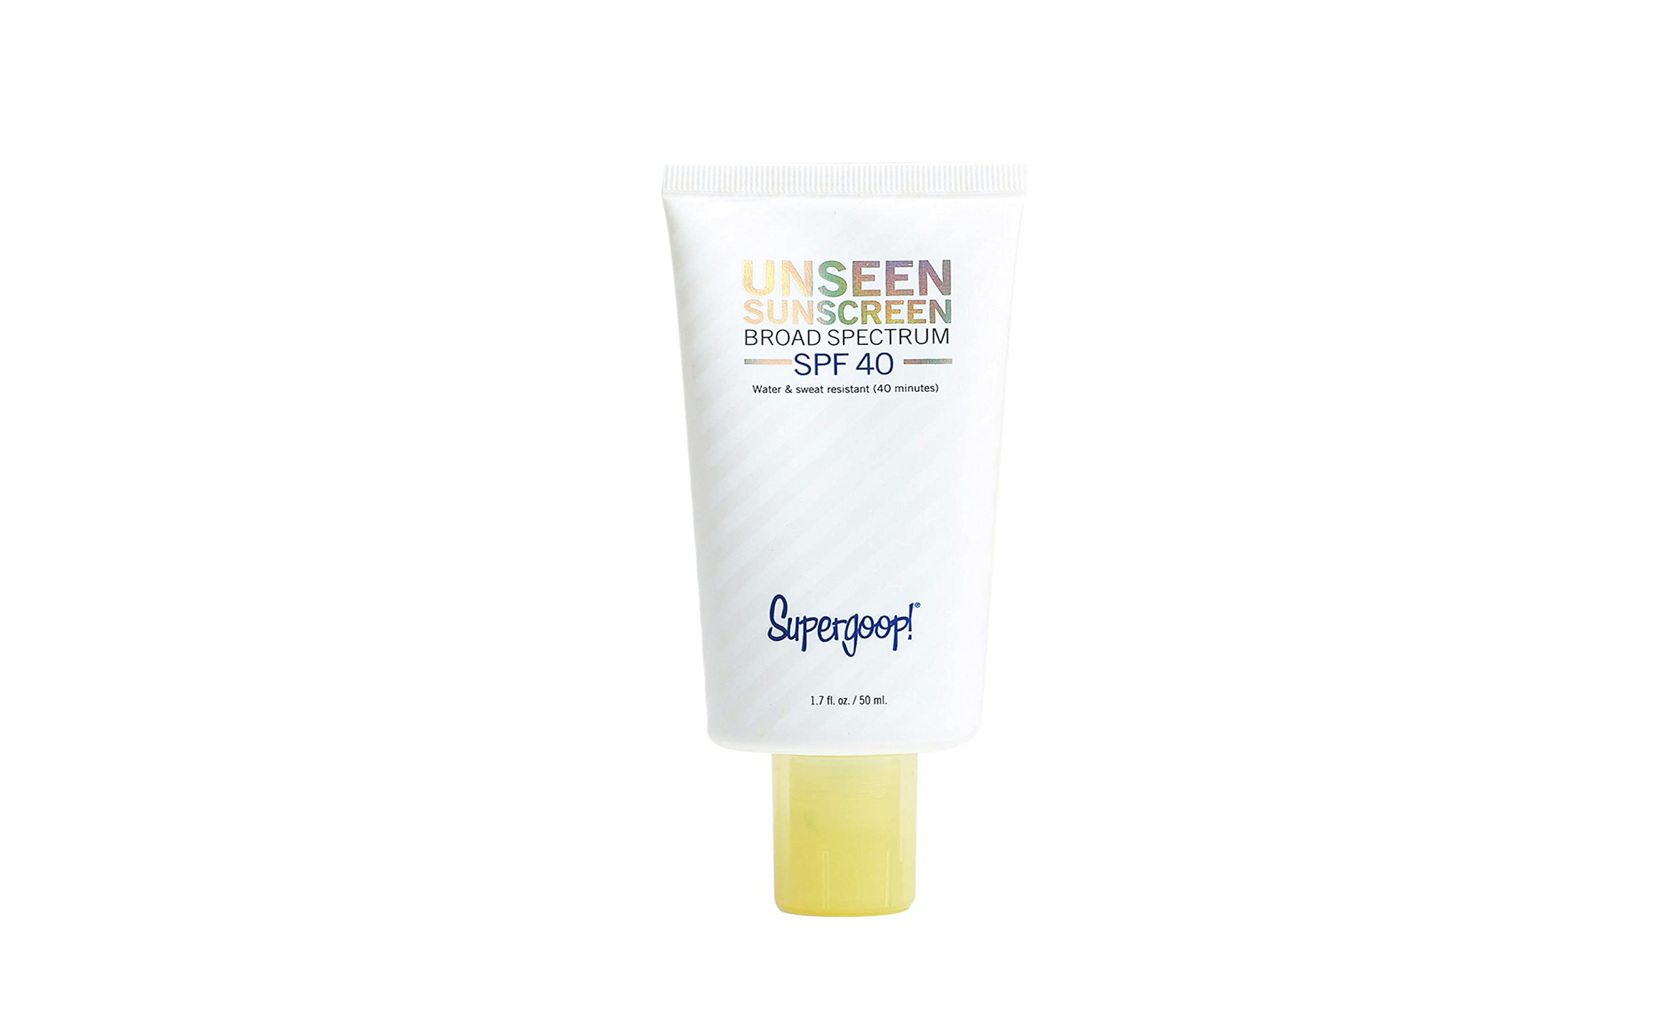 Supergoop Unseen Sunscreen 1 | Gear For Life